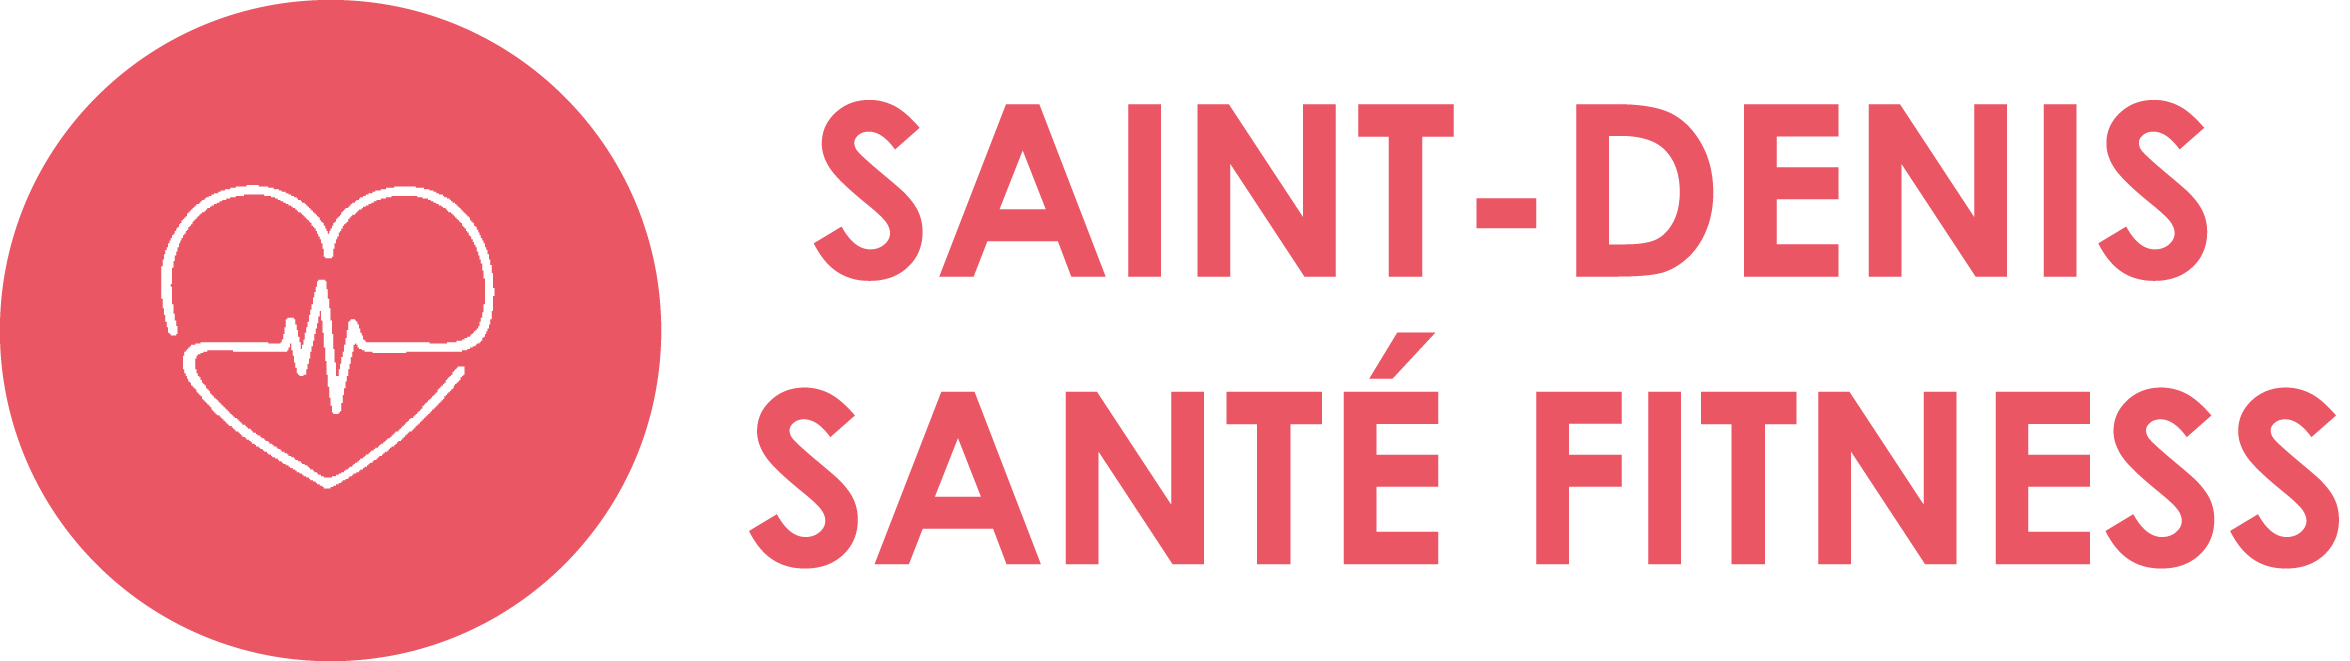 Saint Denis Santé Fitness